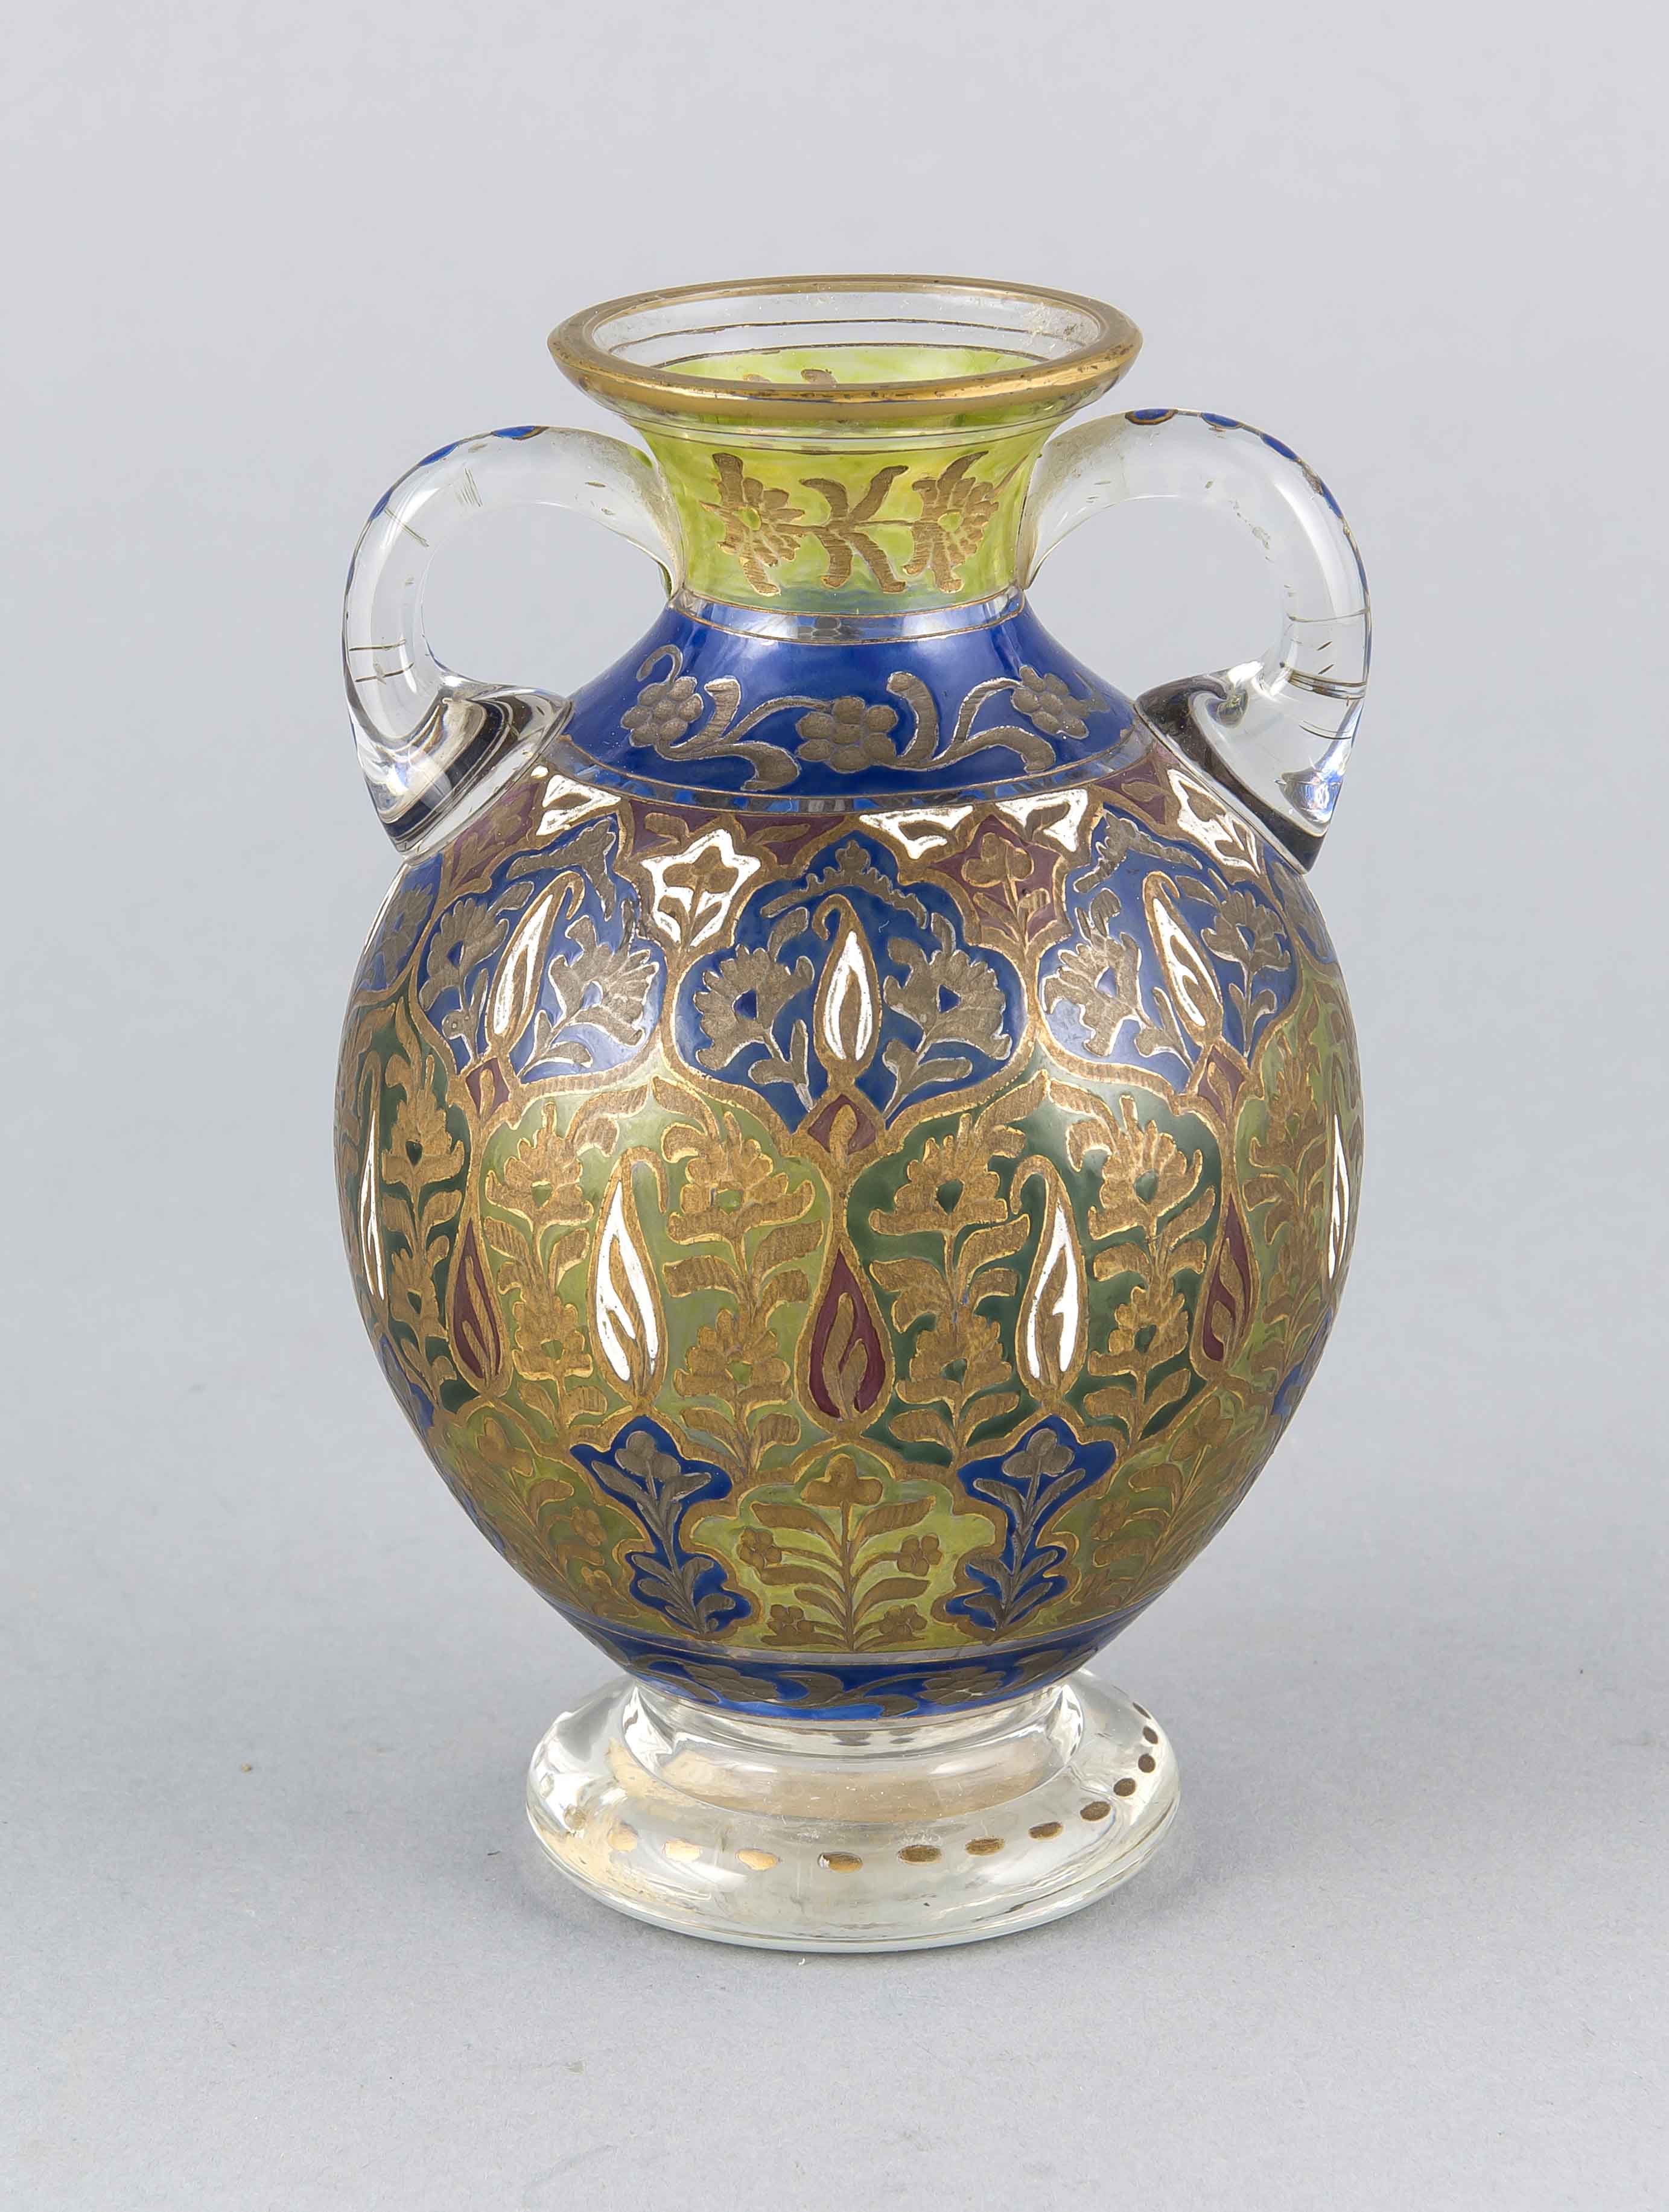 Ziervase, Schlesien, um 1885, Fritz Heckert, Petersdorf, sog. Jodhpur-Glas, klares Glasmit